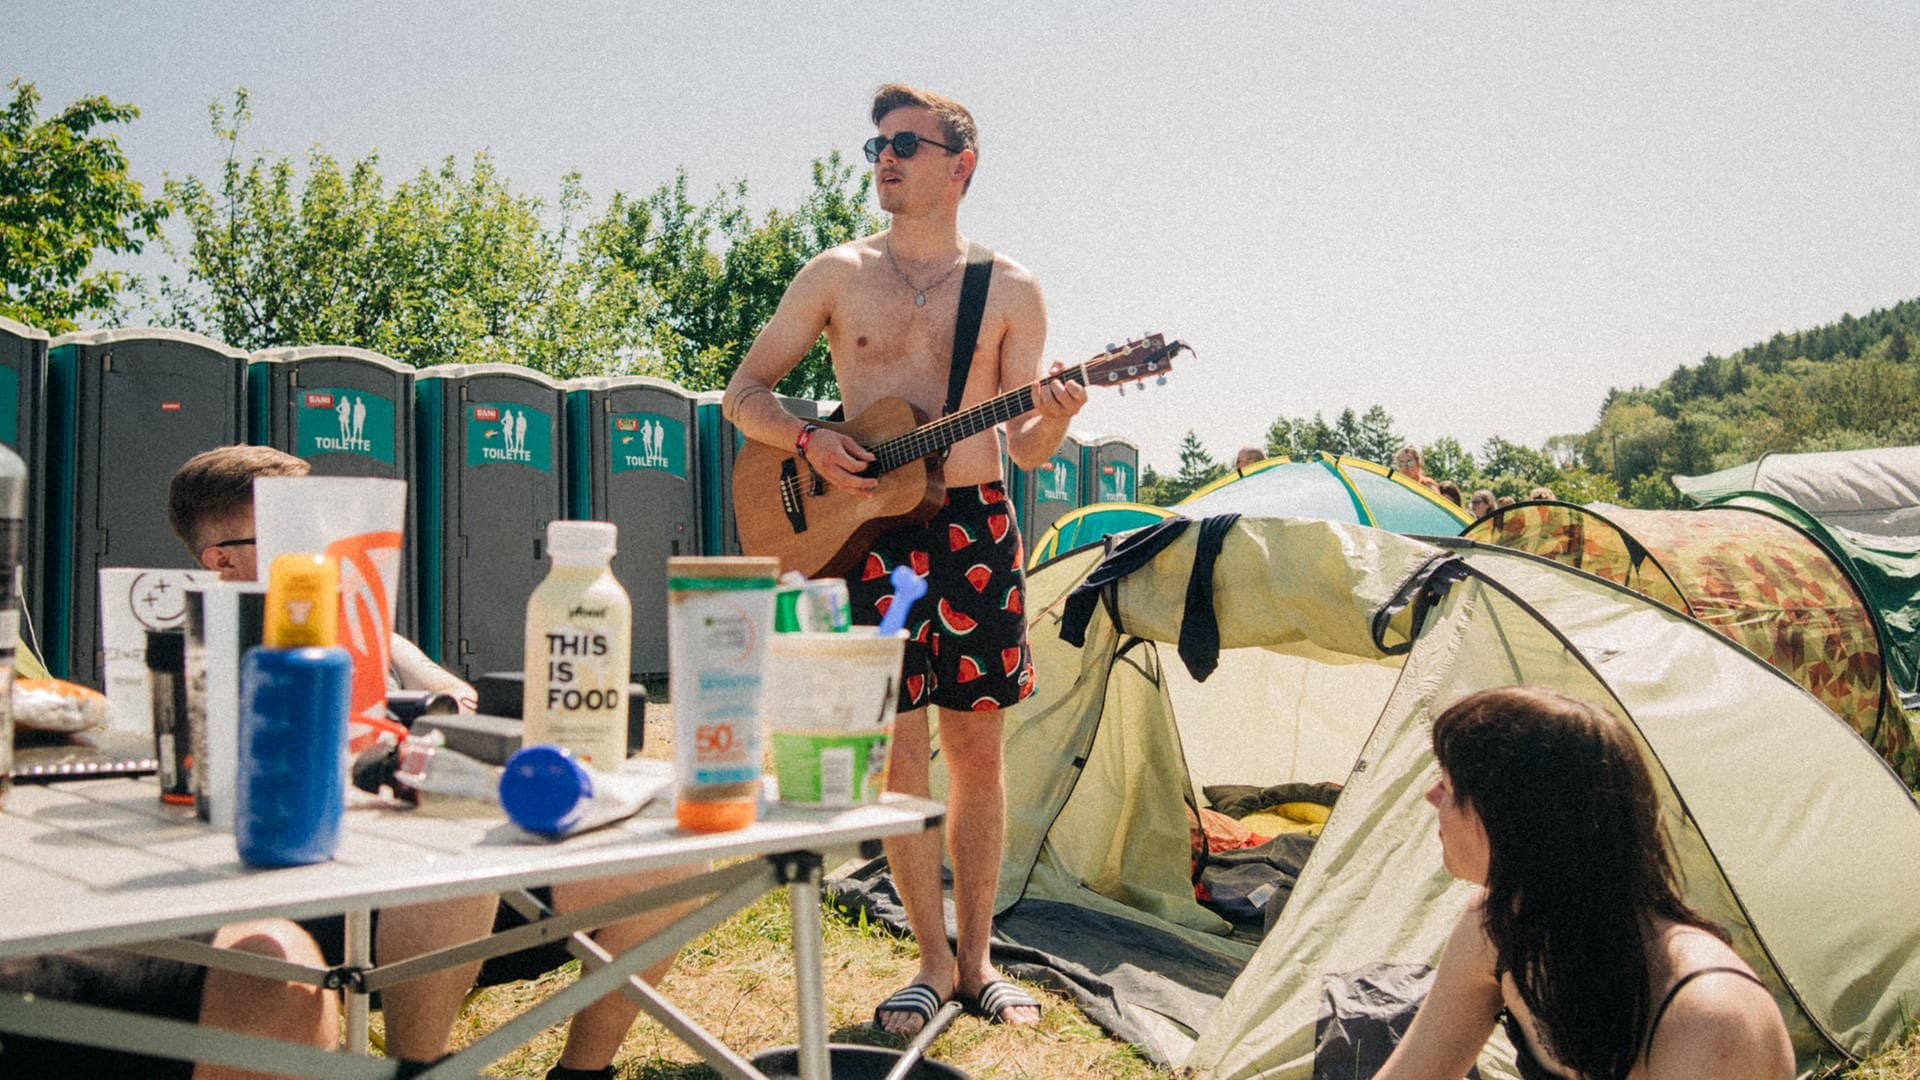 Ein junger Mann steht in Shorts und mit Gitarre auf dem Campingplatz von Rock am Ring zwischen Zelten